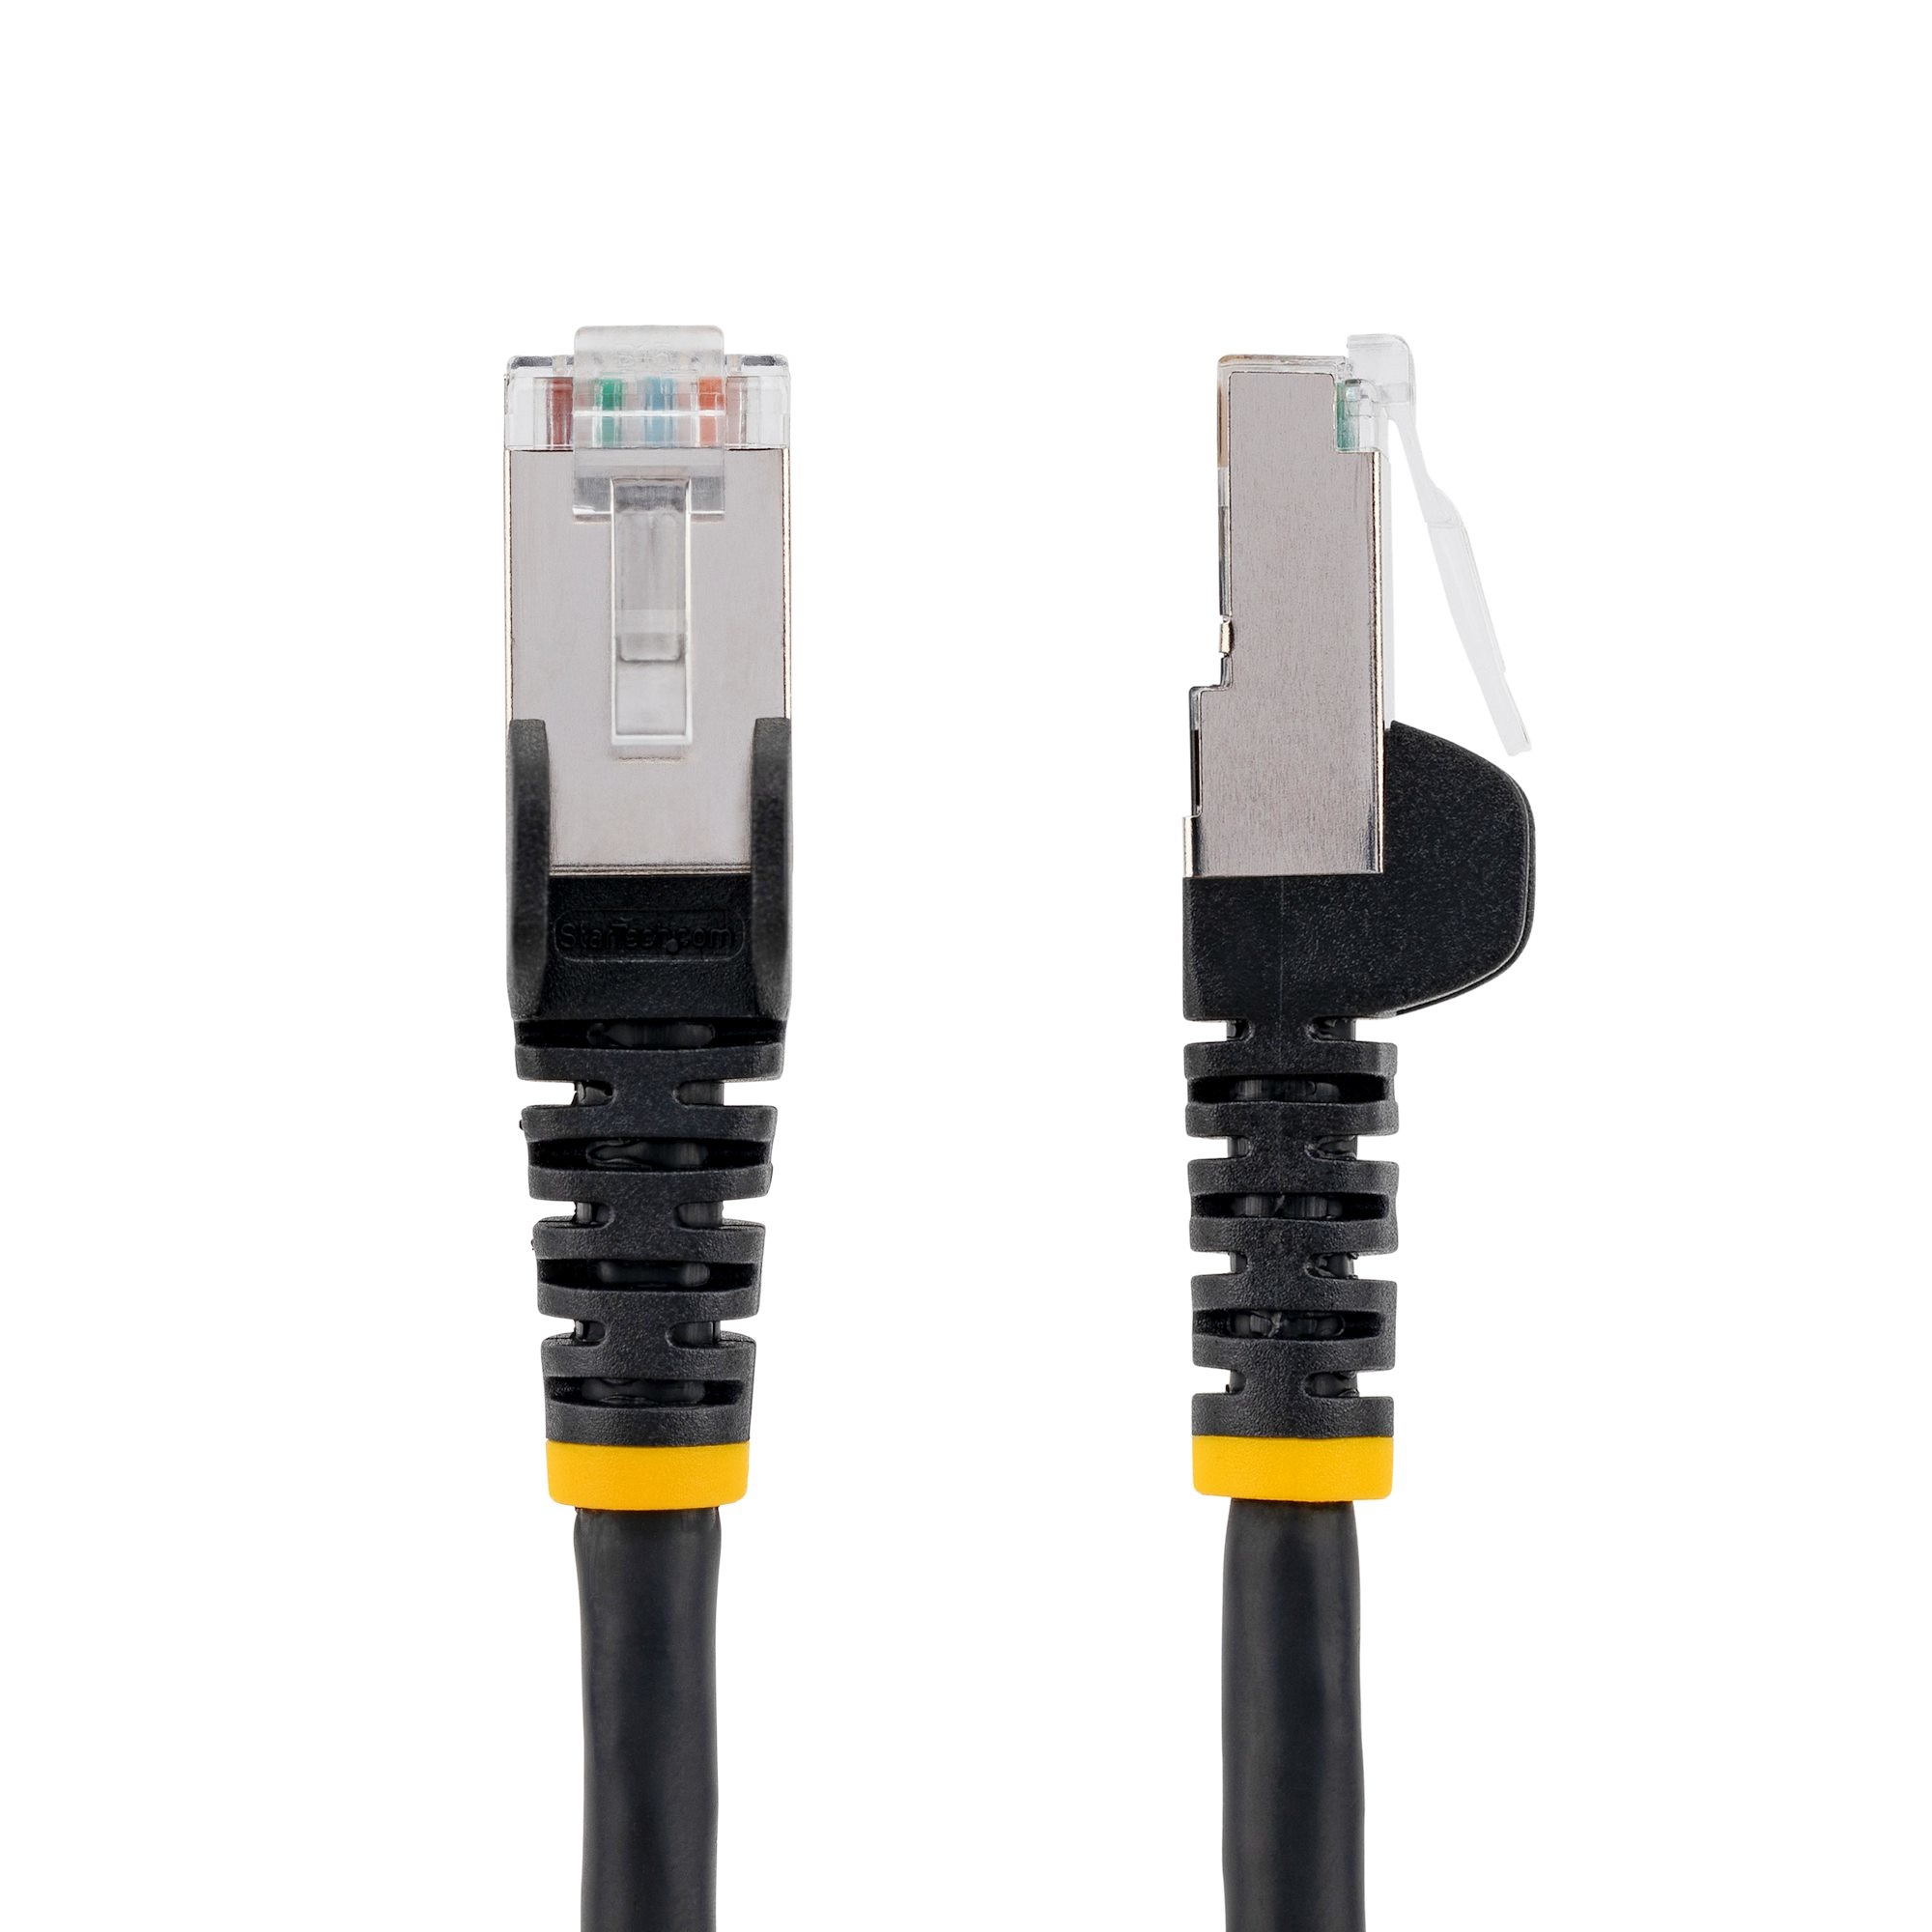 5m LSZH CAT6a Ethernet Cable - Black thumbnail